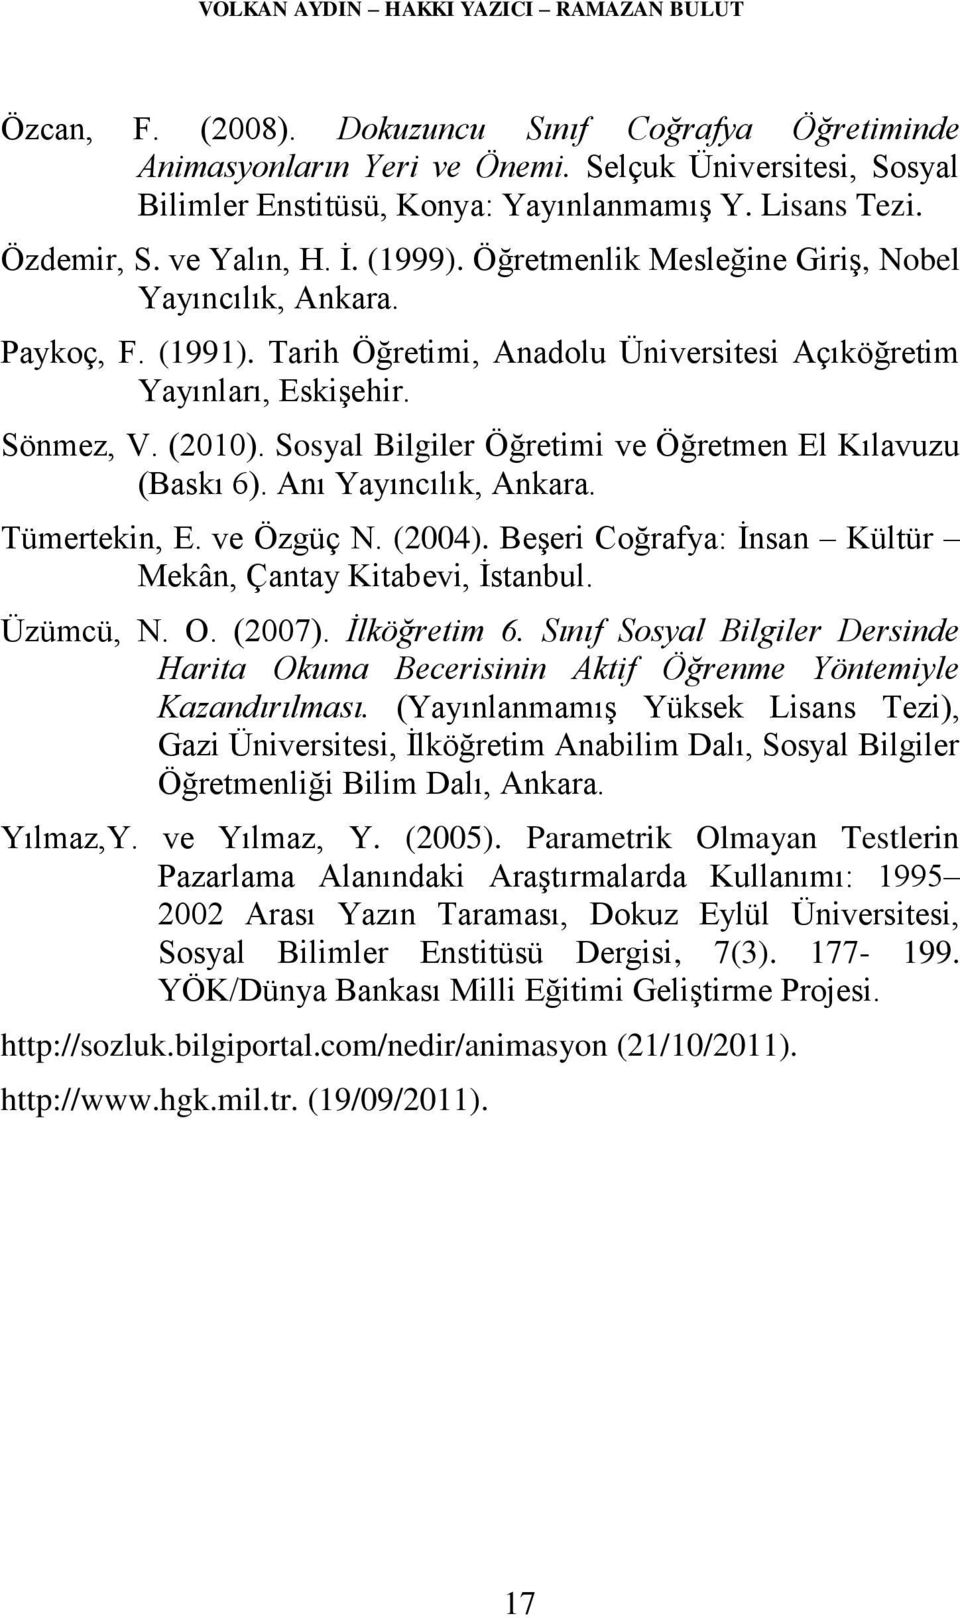 Sönmez, V. (2010). Sosyal Bilgiler Öğretimi ve Öğretmen El Kılavuzu (Baskı 6). Anı Yayıncılık, Ankara. Tümertekin, E. ve Özgüç N. (2004).